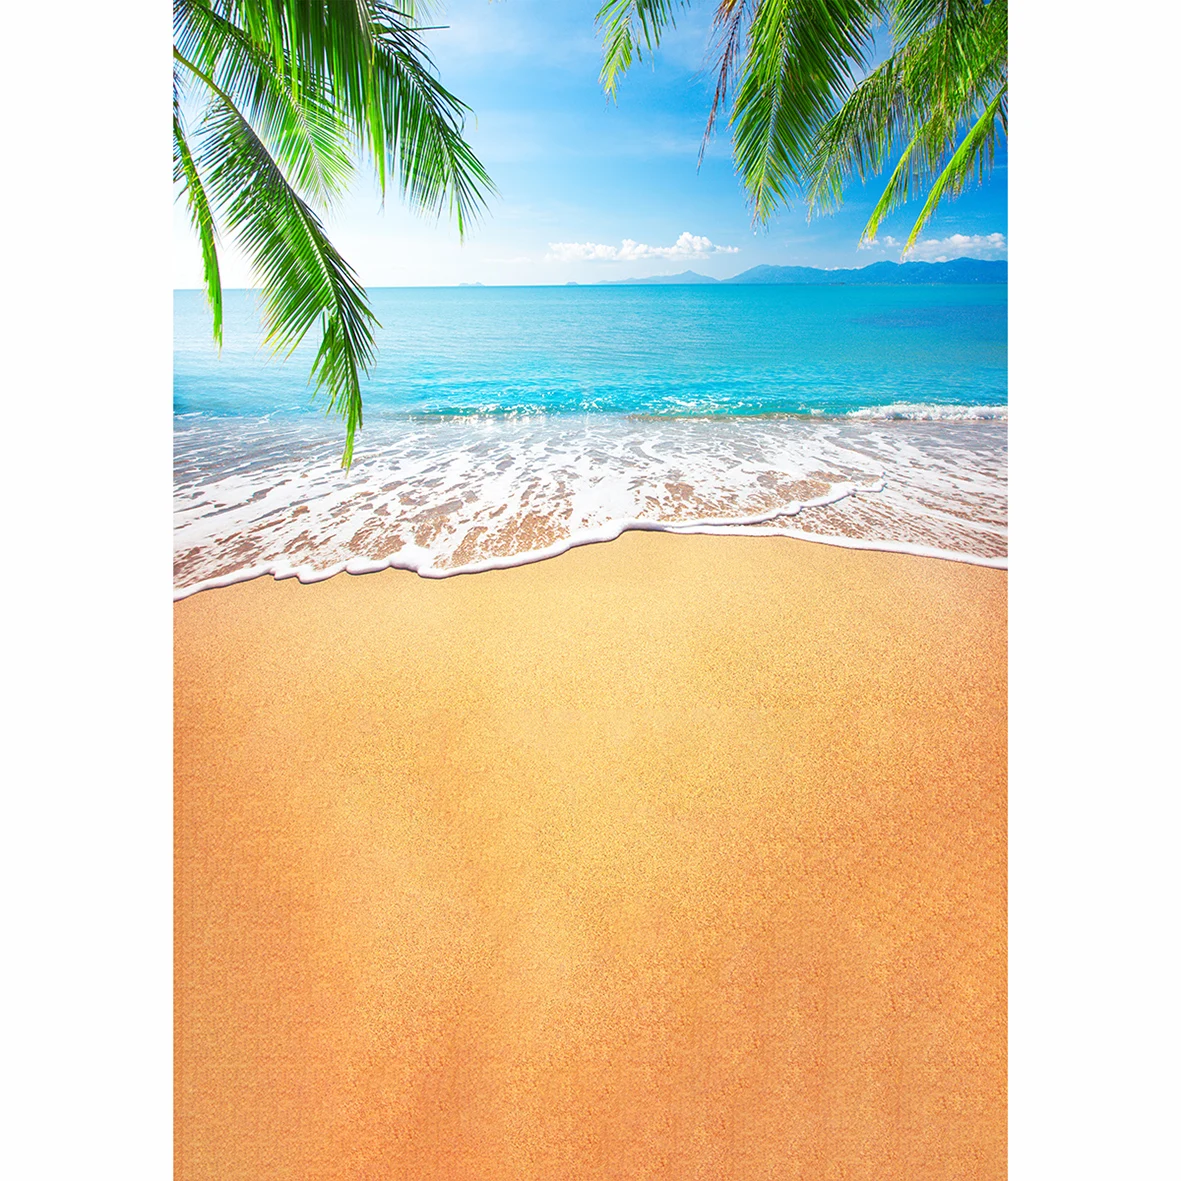 Allenjoy kulisu pre fotografické štúdio blue Sea vlny tropické piesočnatej pláži strom lete pozadí originálny dizajn photocall